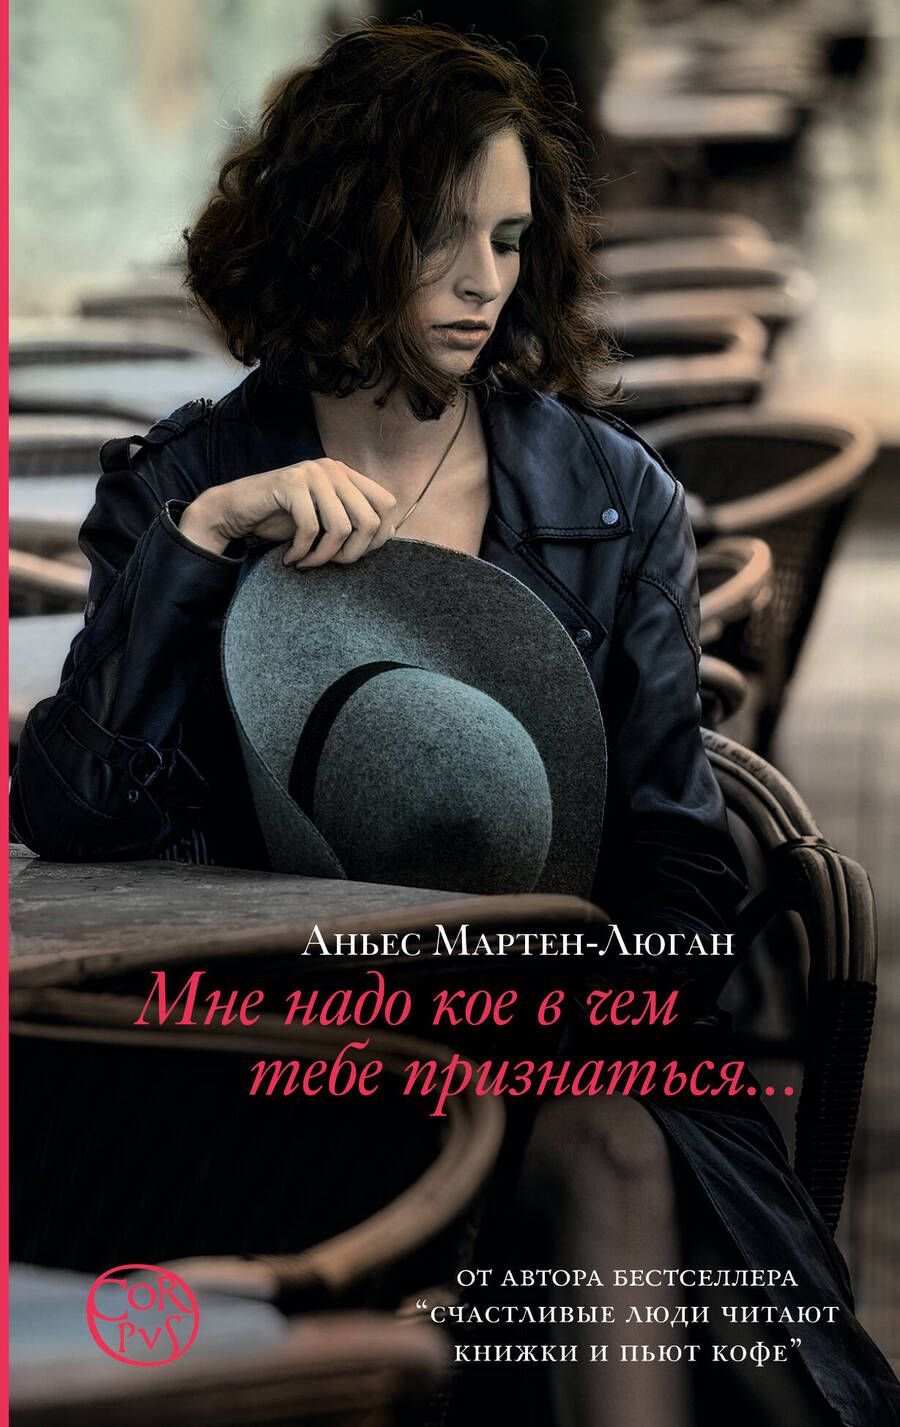 Обложка книги "Аньес Мартен-Люган: Мне надо кое в чем тебе признаться"